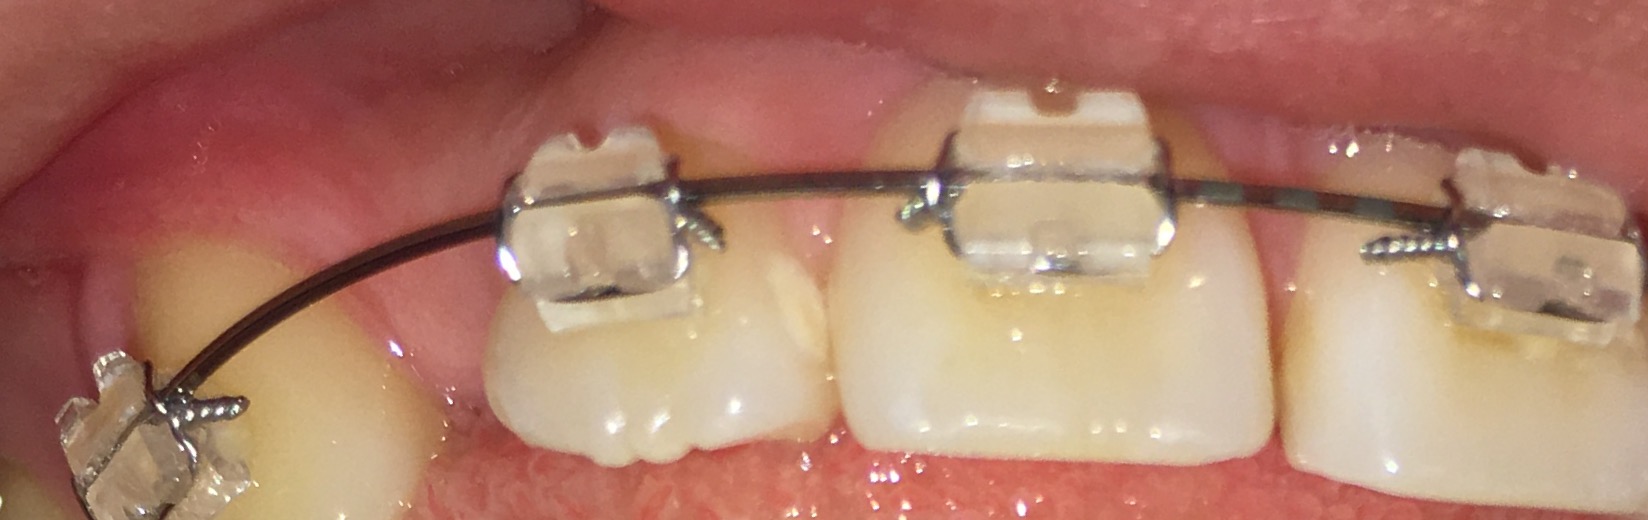 写真あり 歯列矯正中 歯の表面の白い斑点が気になります 歯チャンネル歯科相談室